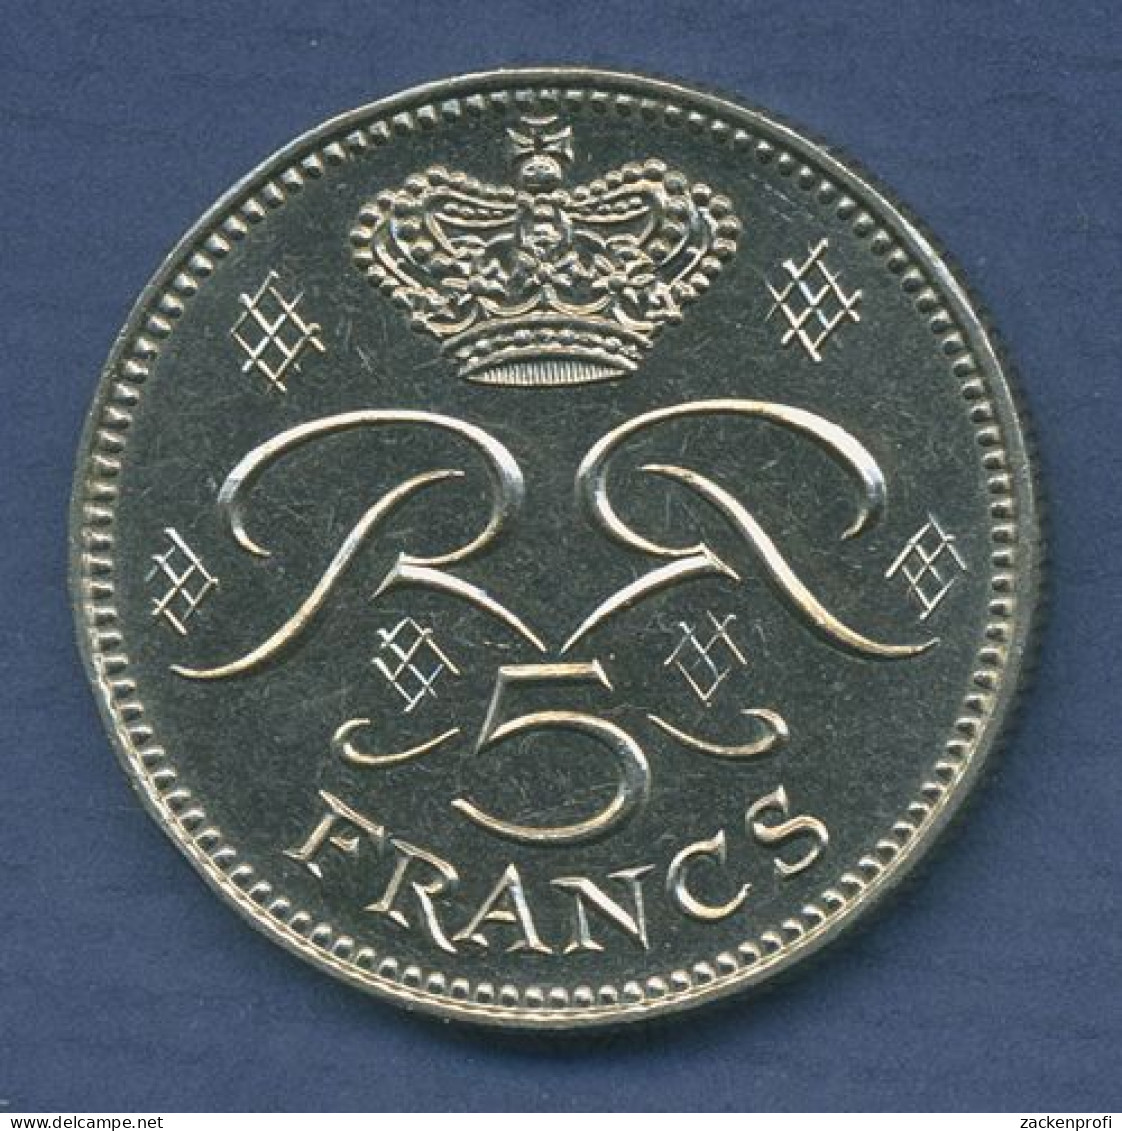 Monaco 5 Francs Kursmünze 1971 Prinz Rainer III. Monogramm, KM 150 Vz (m3632) - 1960-2001 Nouveaux Francs